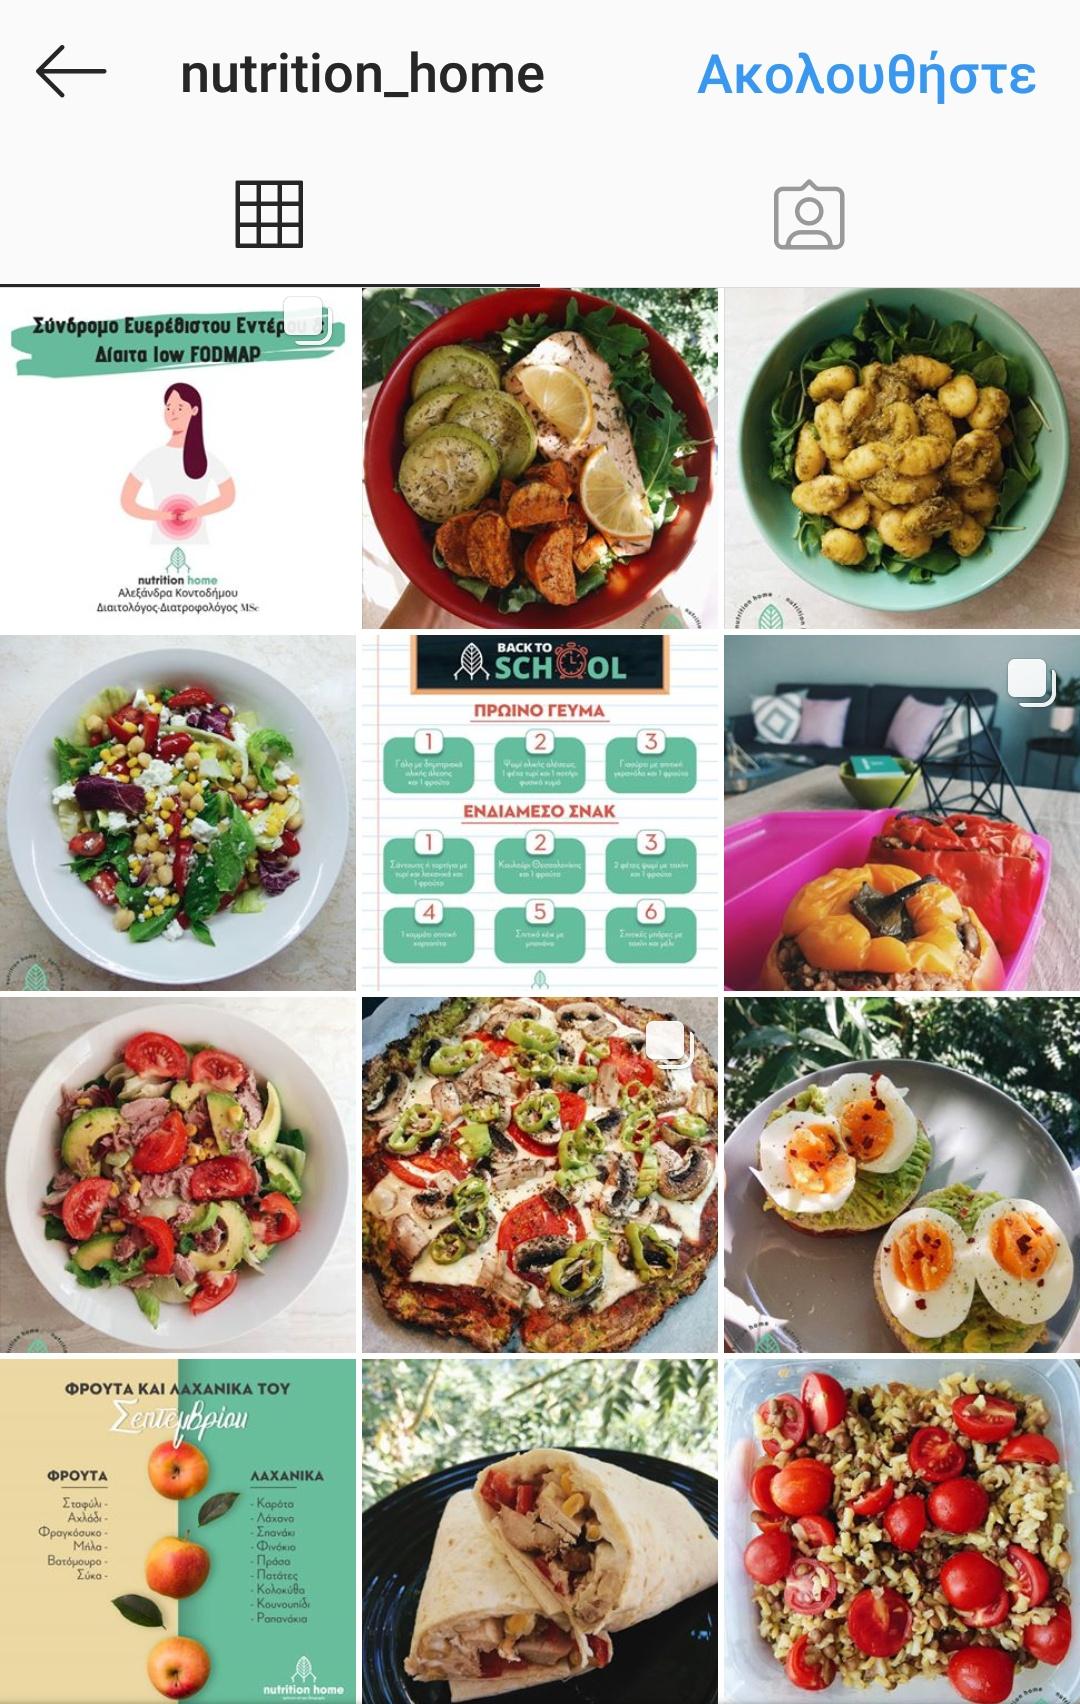 Βρήκαμε 3 υπέροχα Instagram profiles με υγιεινές και νόστιμες συνταγές